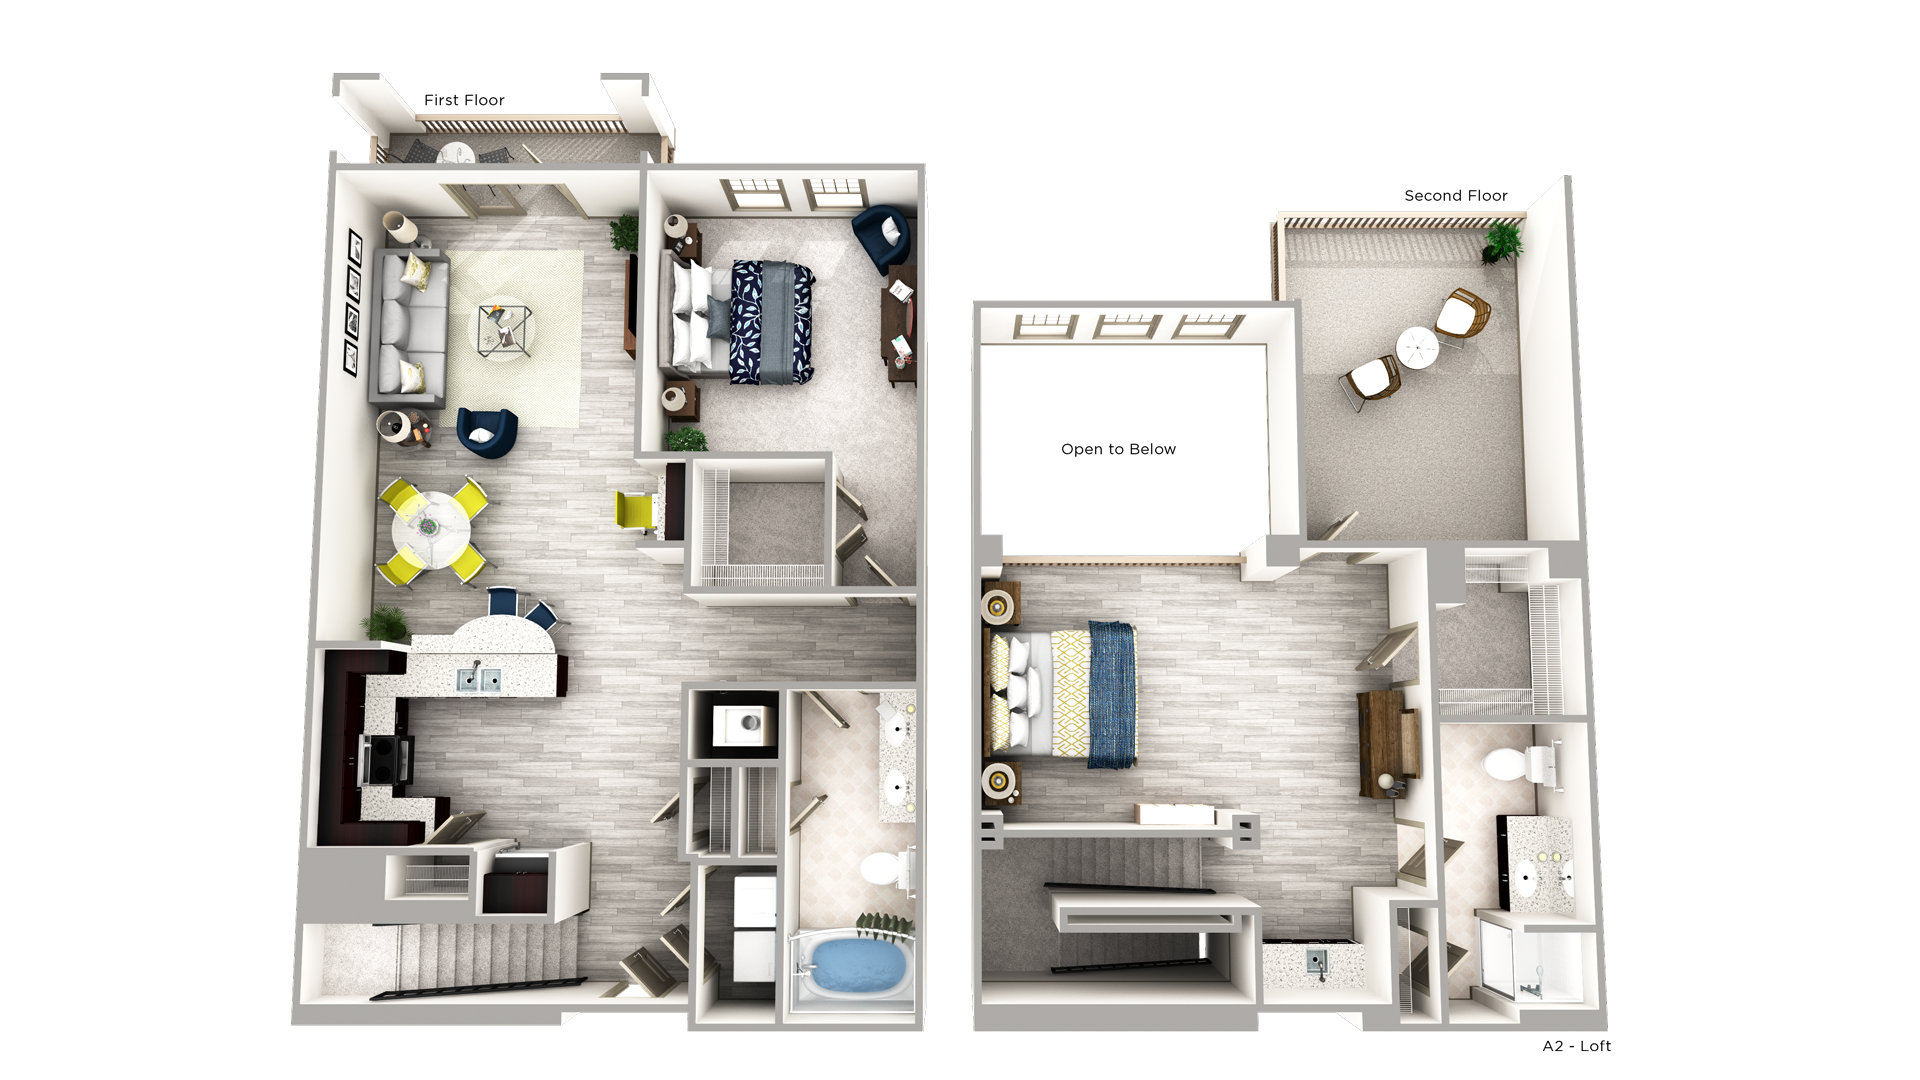 2nd Floor Layout of Elle of Buckhead Floorplan Featuring 1 Bedroom each